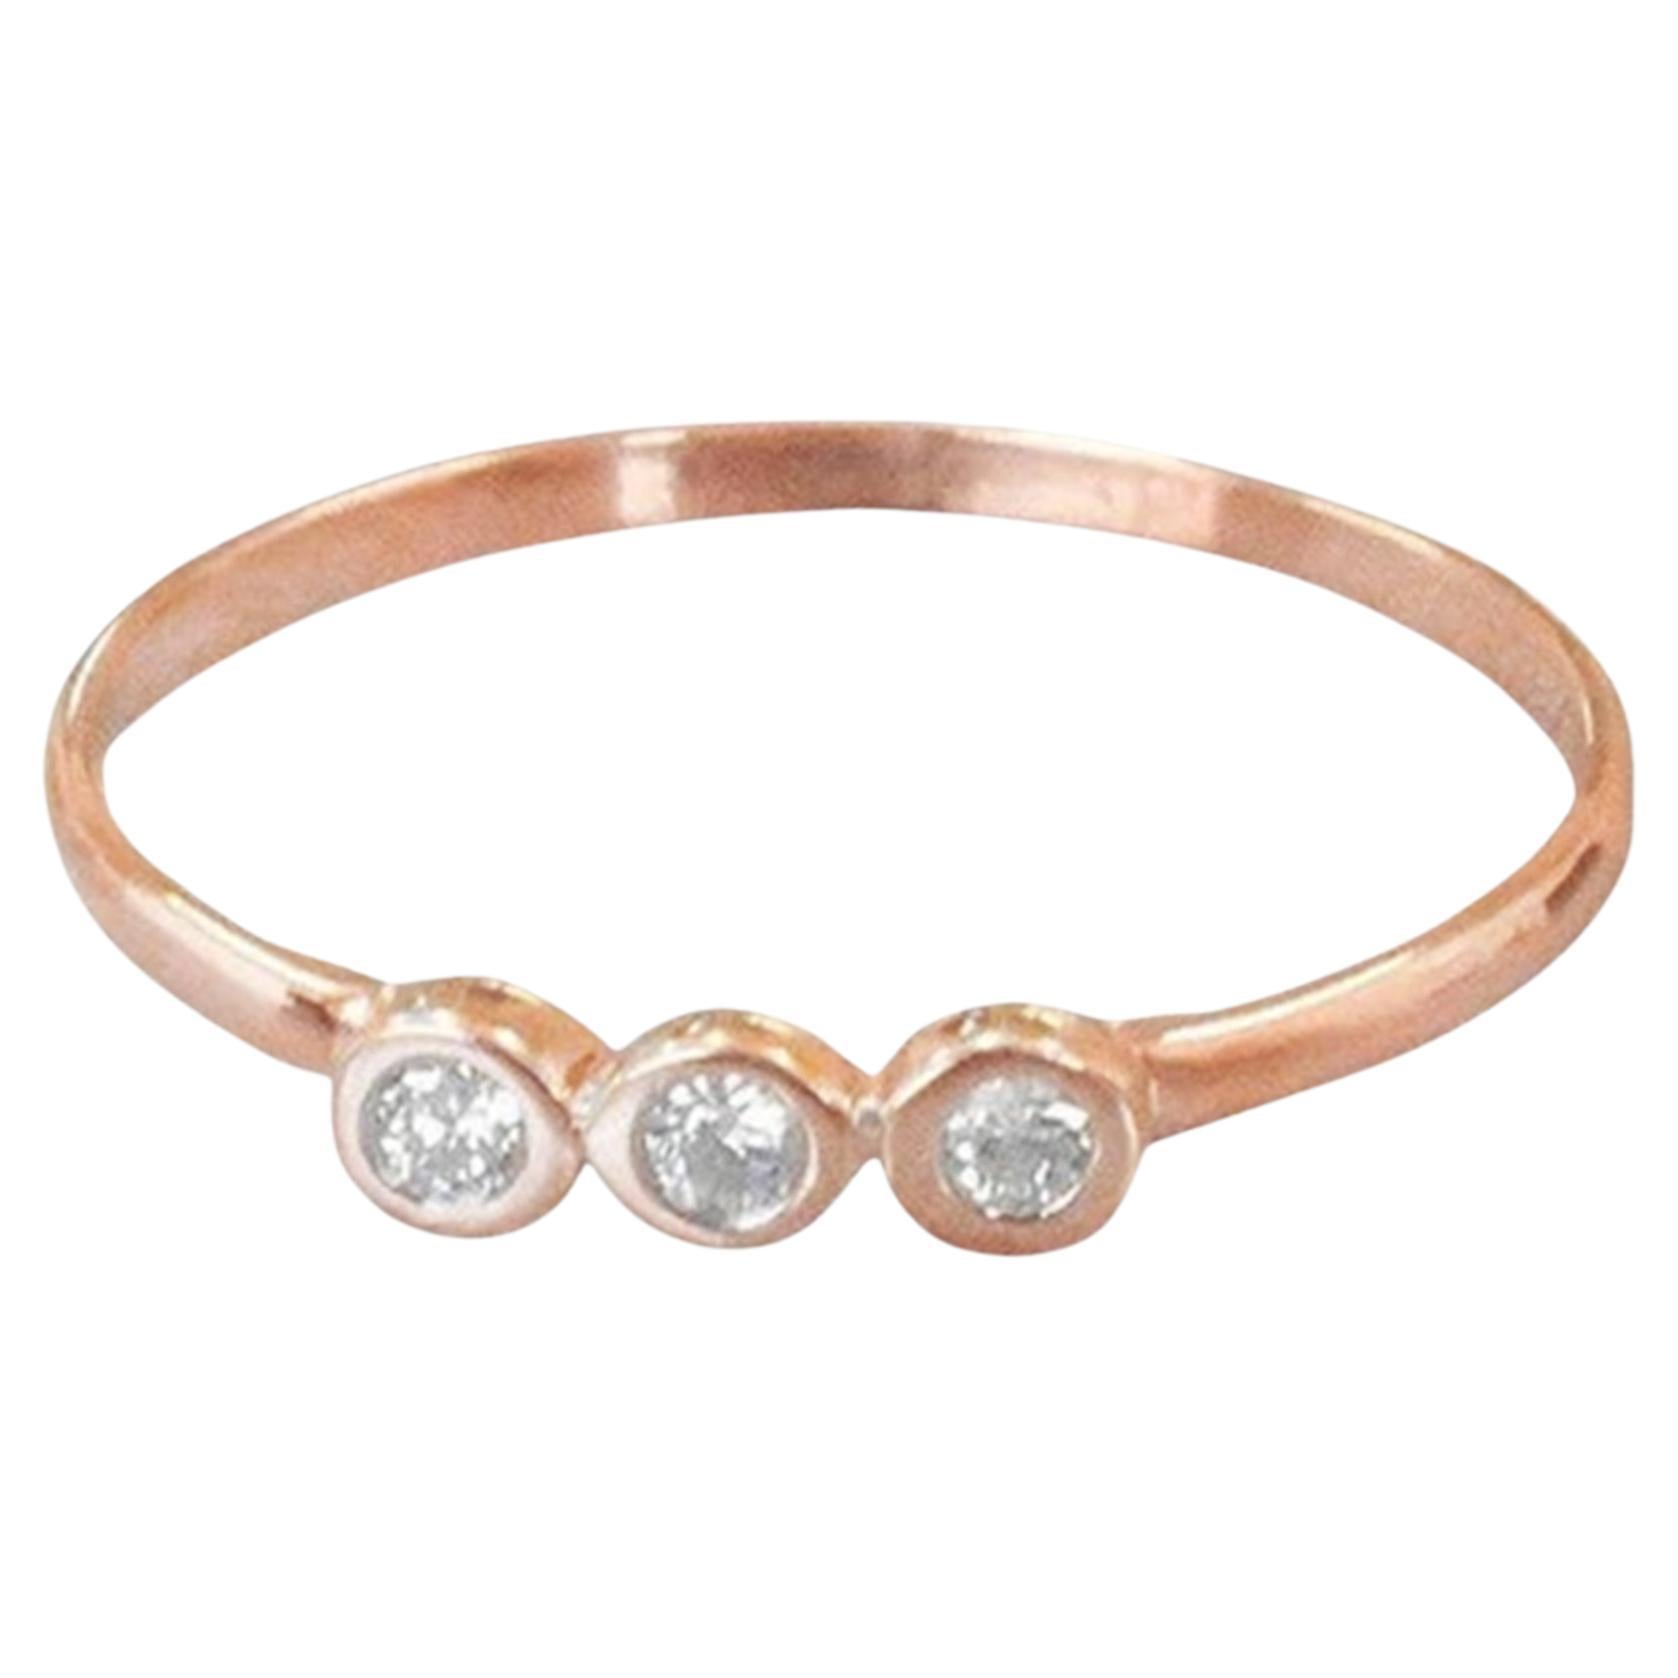 For Sale:  18k Gold Diamond 1.75 mm Ring Bezel Setting Three Diamond Ring Trio Diamond Ring